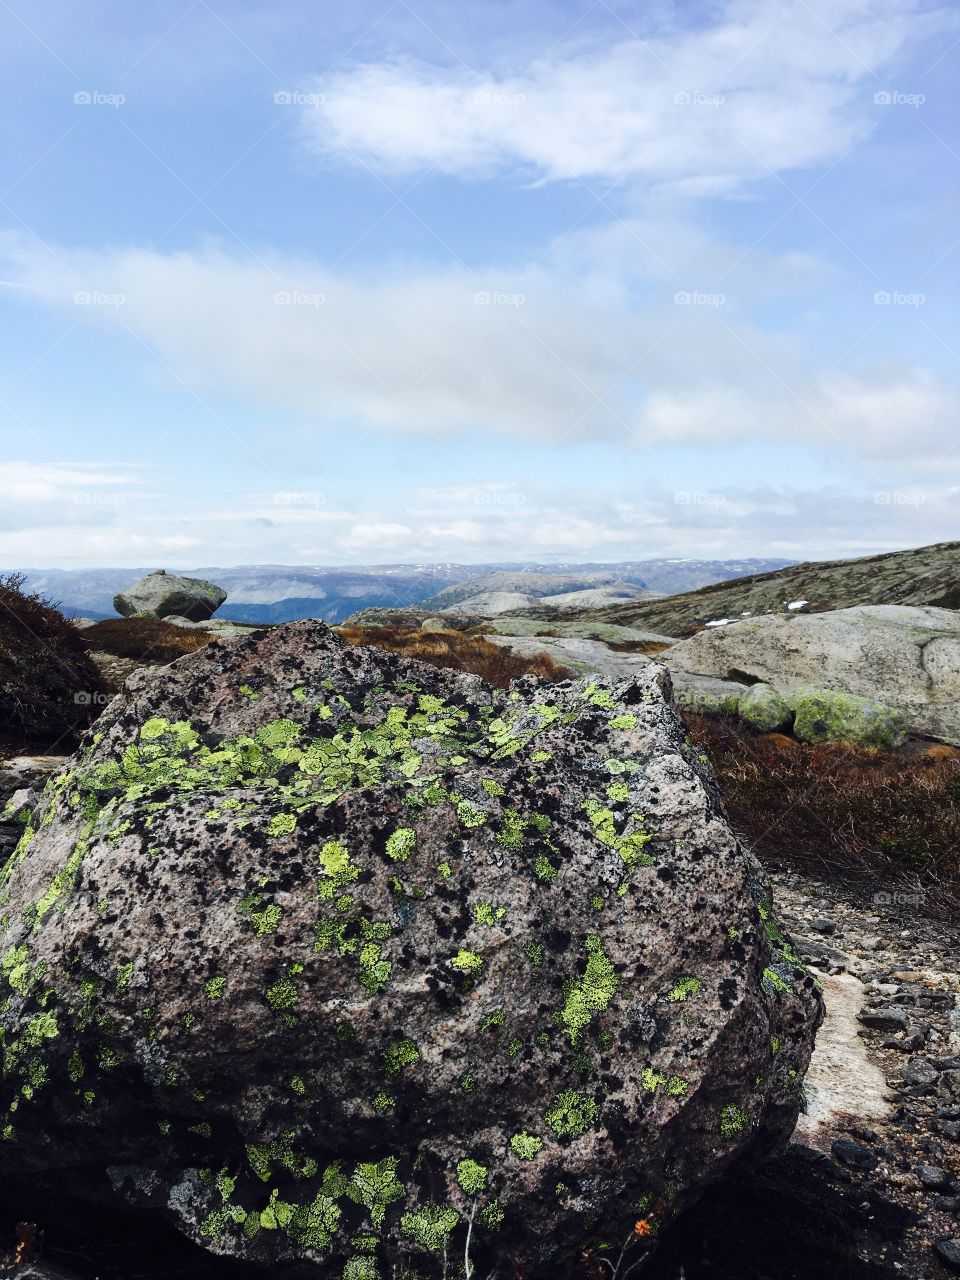 Green spot in the rock/ Knaben Norway